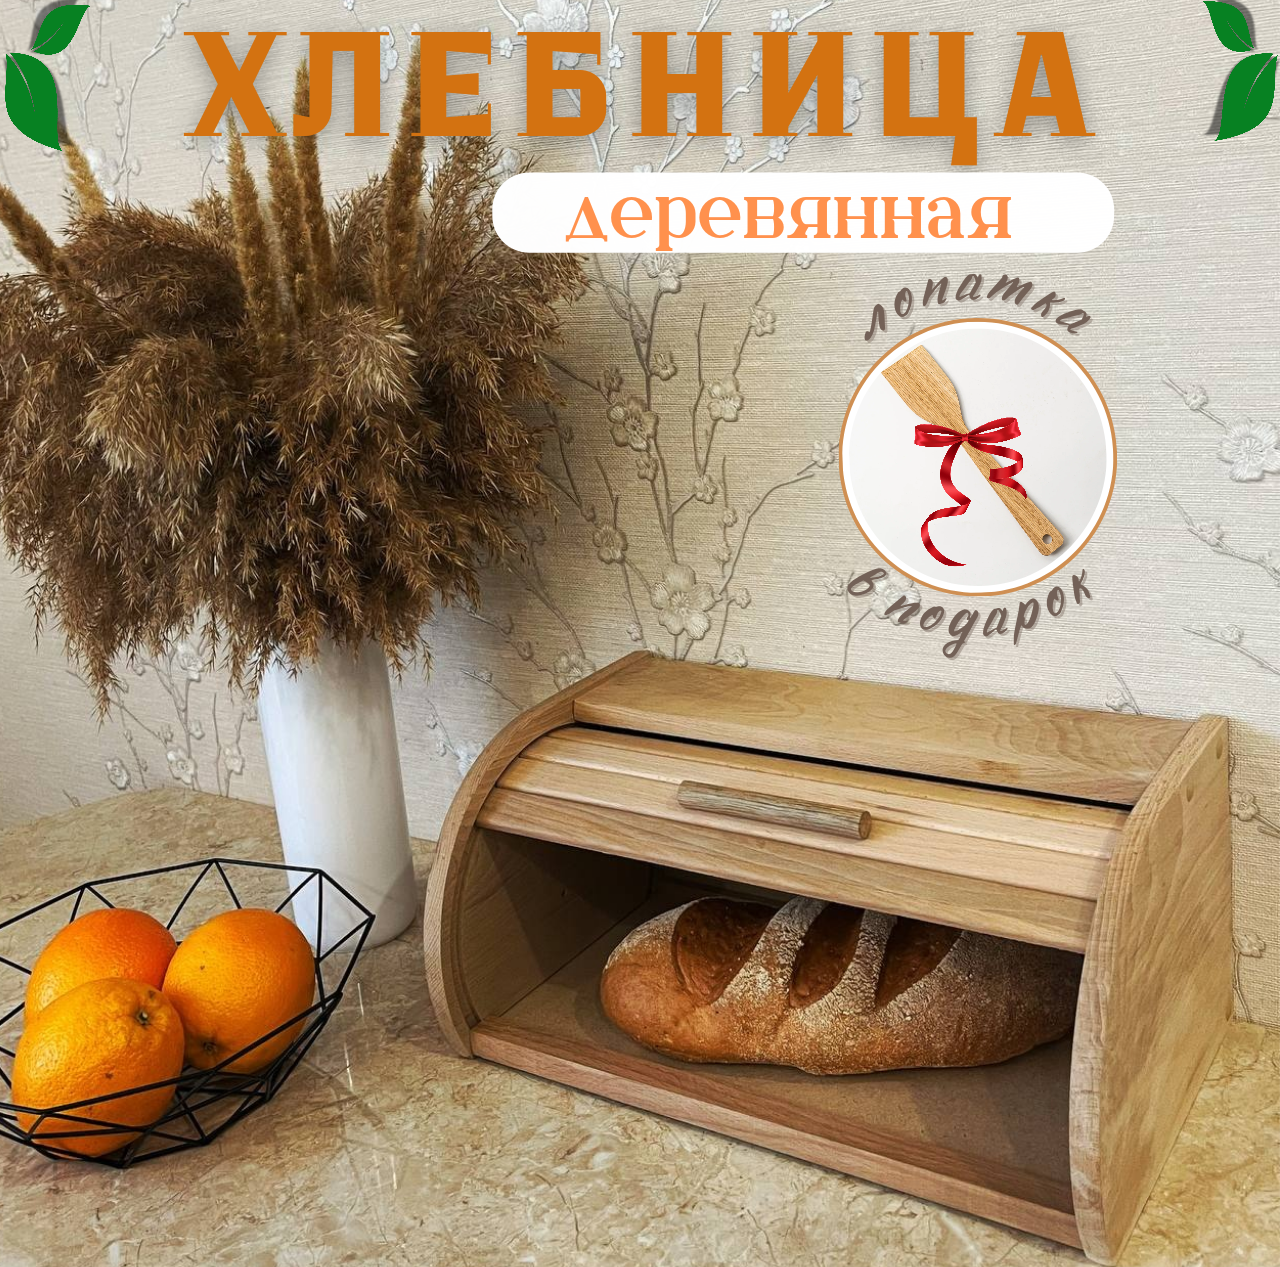 Хлебница деревянная с крышкой 39x24x18 см большая(БУК), контейнер для хлебобулочных изделий, емкость для хлеба